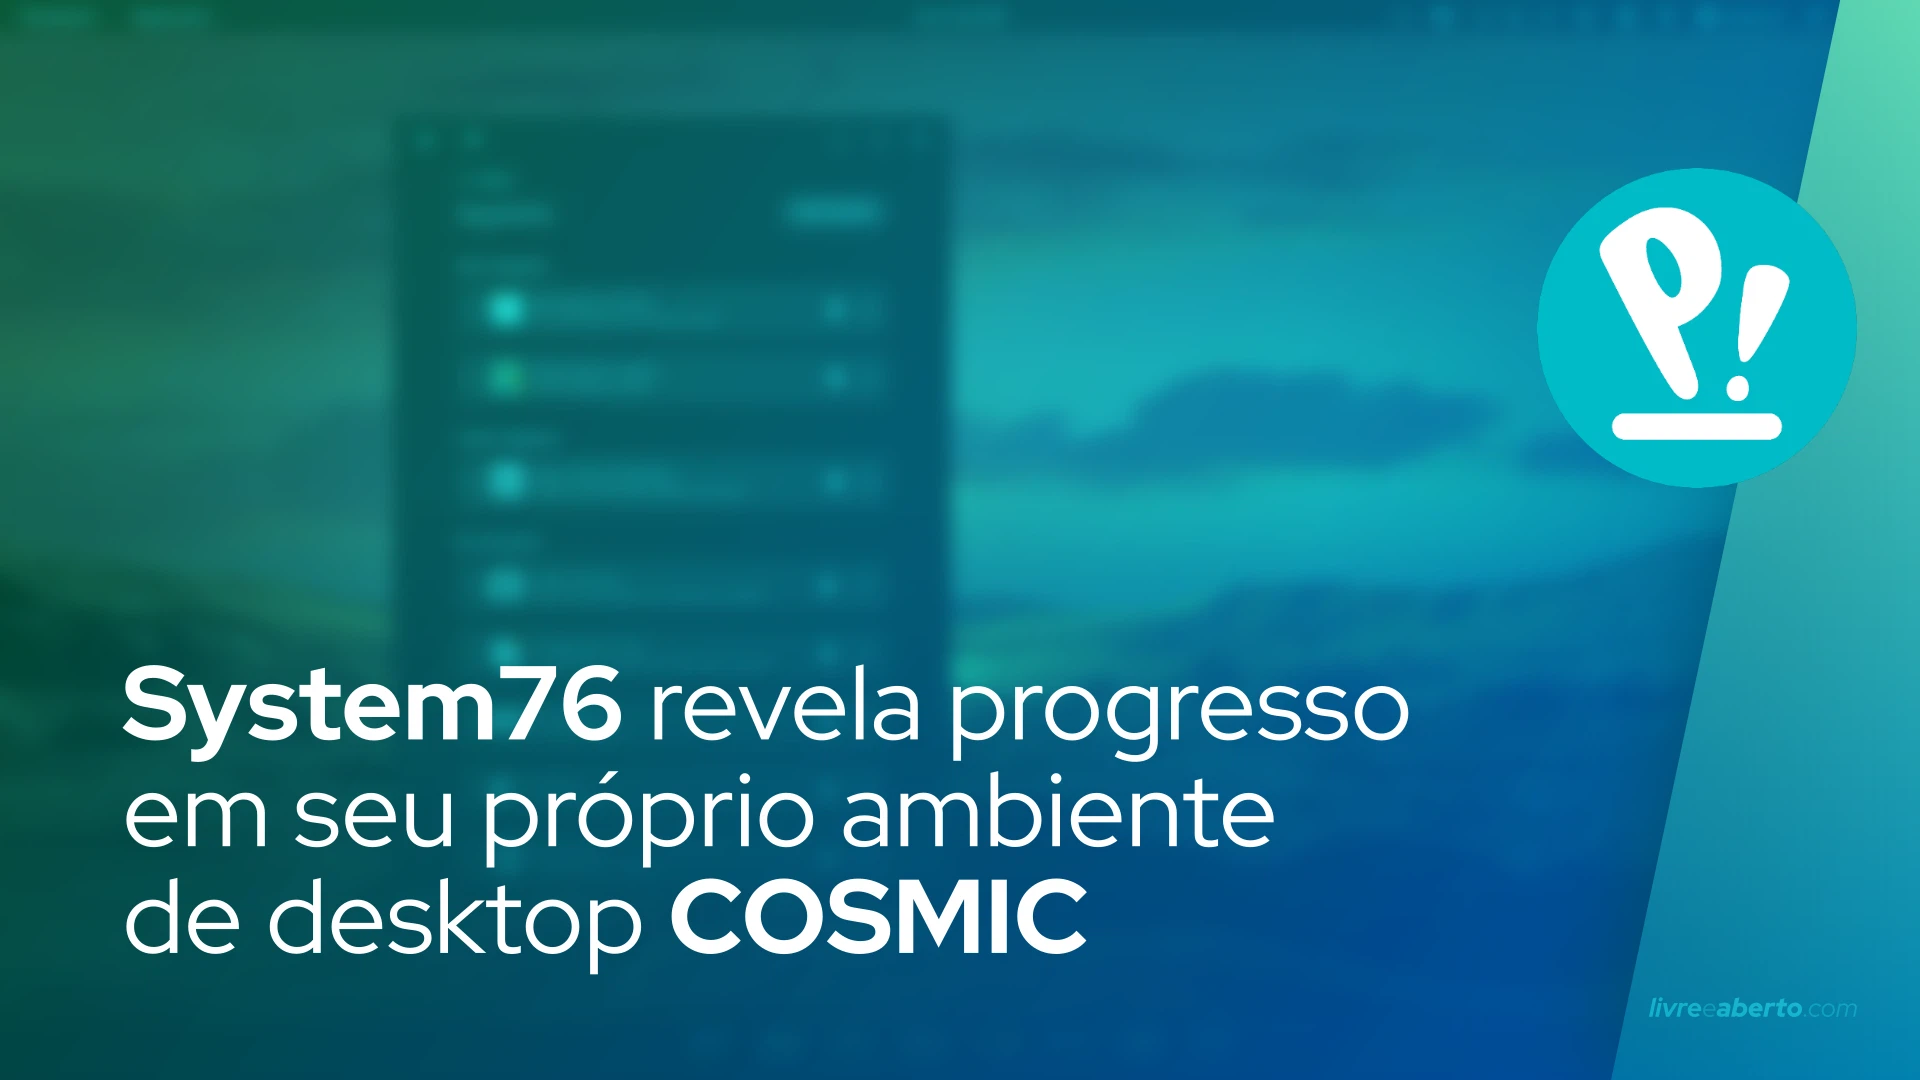 System76 revela progresso em seu próprio ambiente de desktop COSMIC